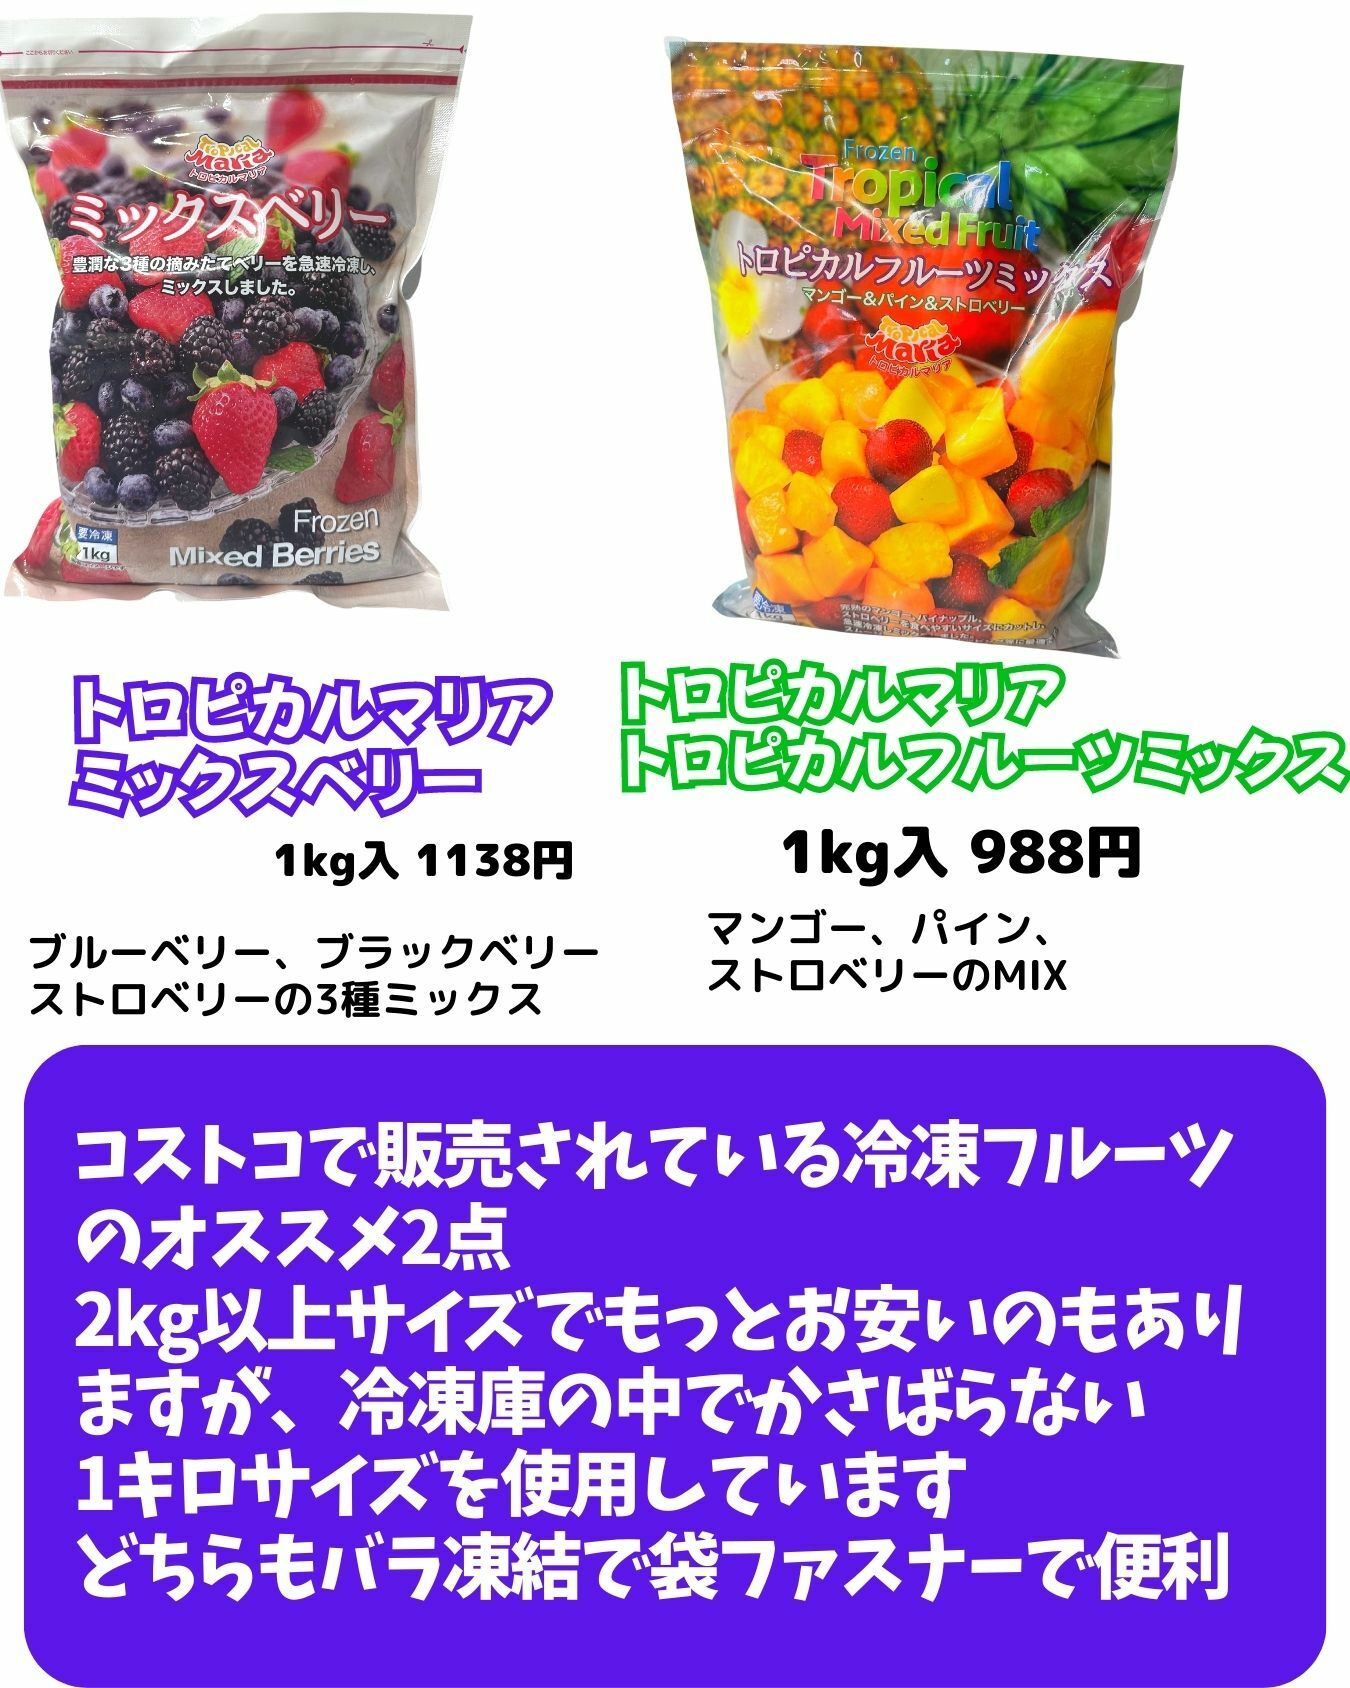 【コストコ】トロピカルマリアの冷凍カットフルーツ